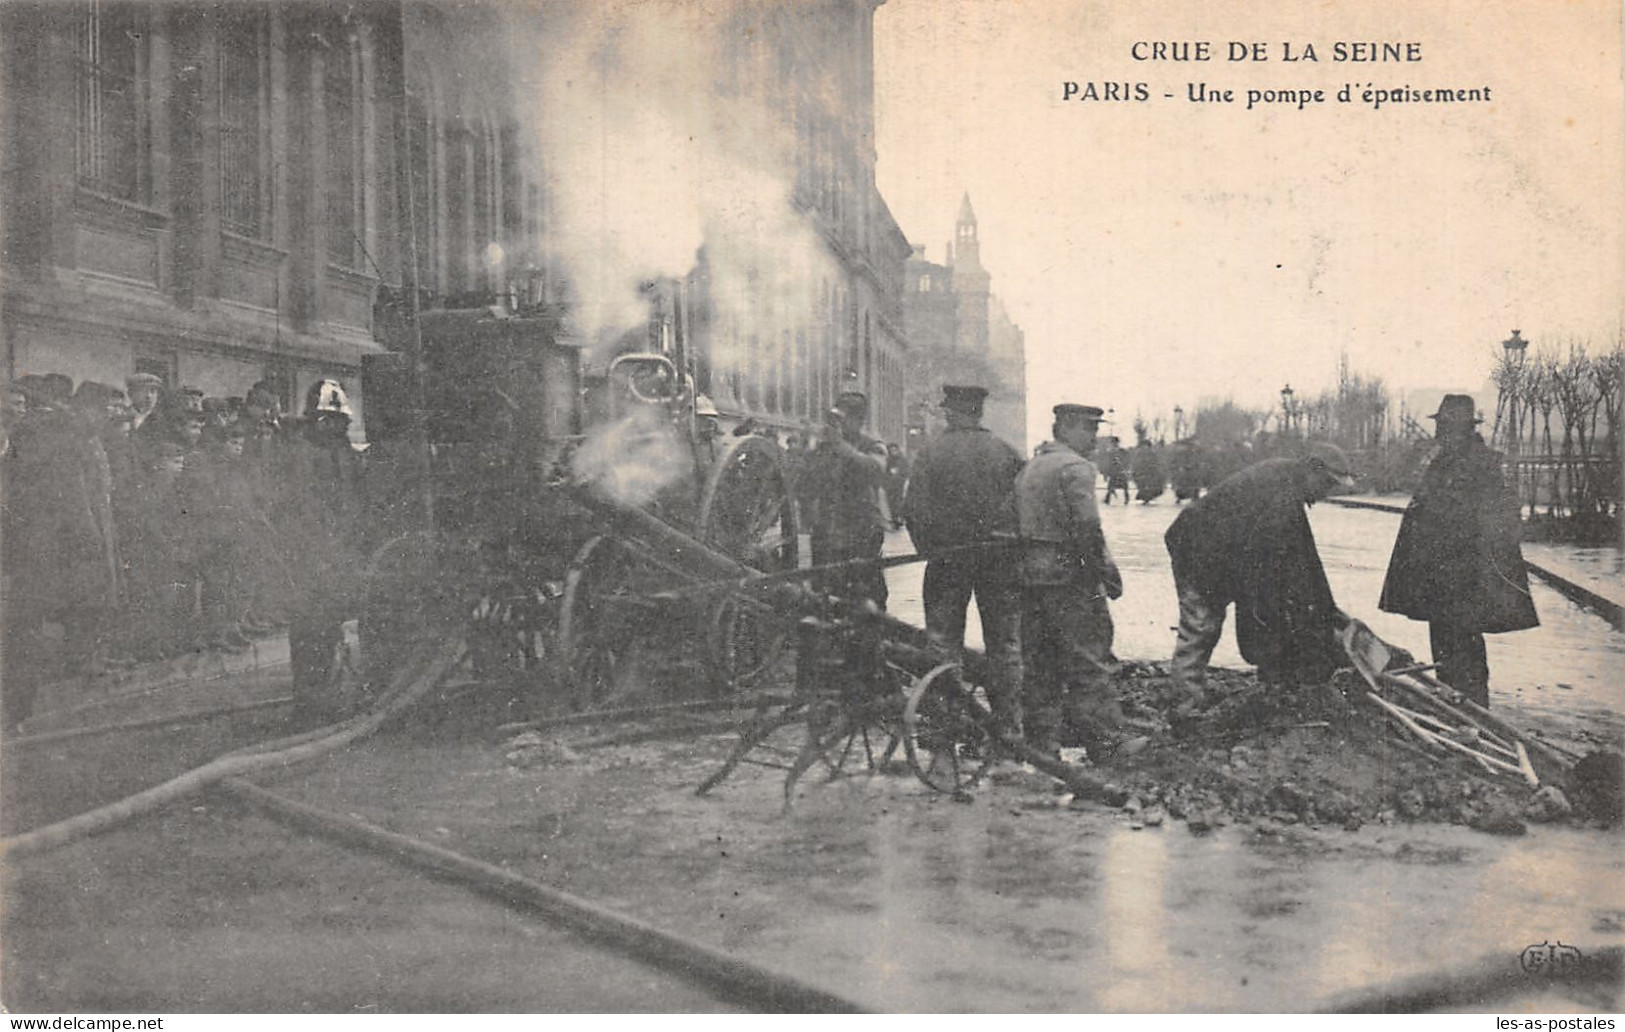 75 PARIS CRUE UNE POMPE - Paris Flood, 1910